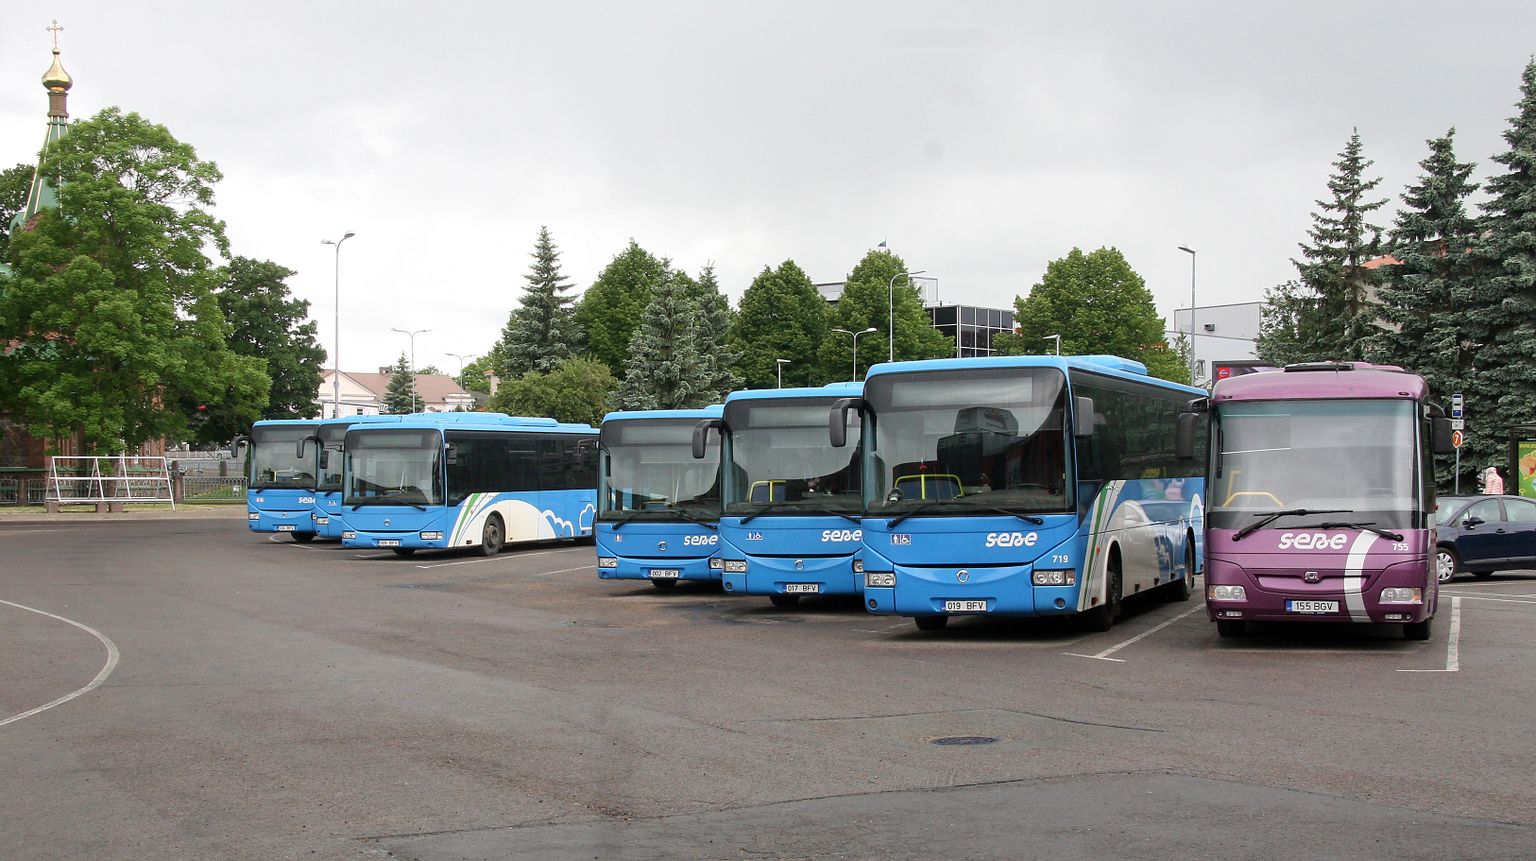 Через полтора года "облачные" автобусы исчезнут с улиц, но новые автобусы тоже будут голубого цвета.